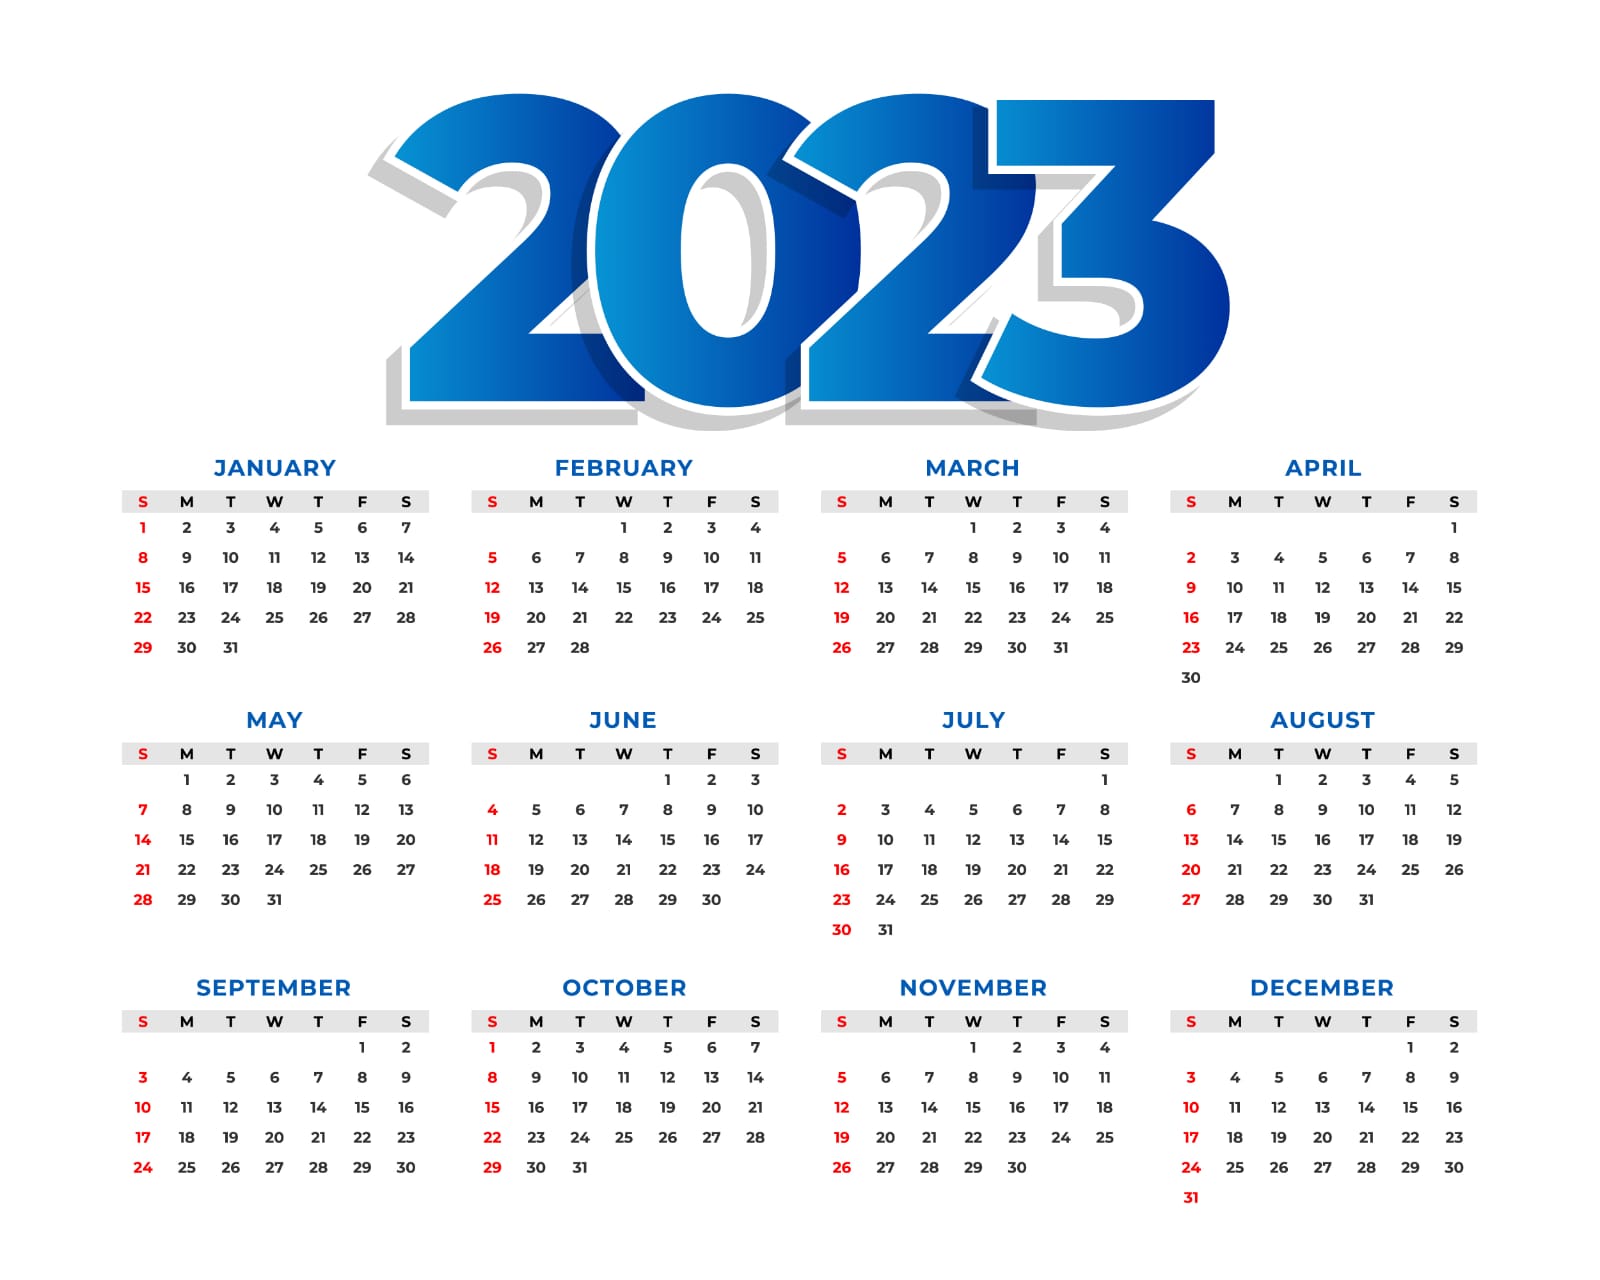 Pemuda Harus Tau Nih! Catat Hari Libur dan Penting di Bulan Desember 2023